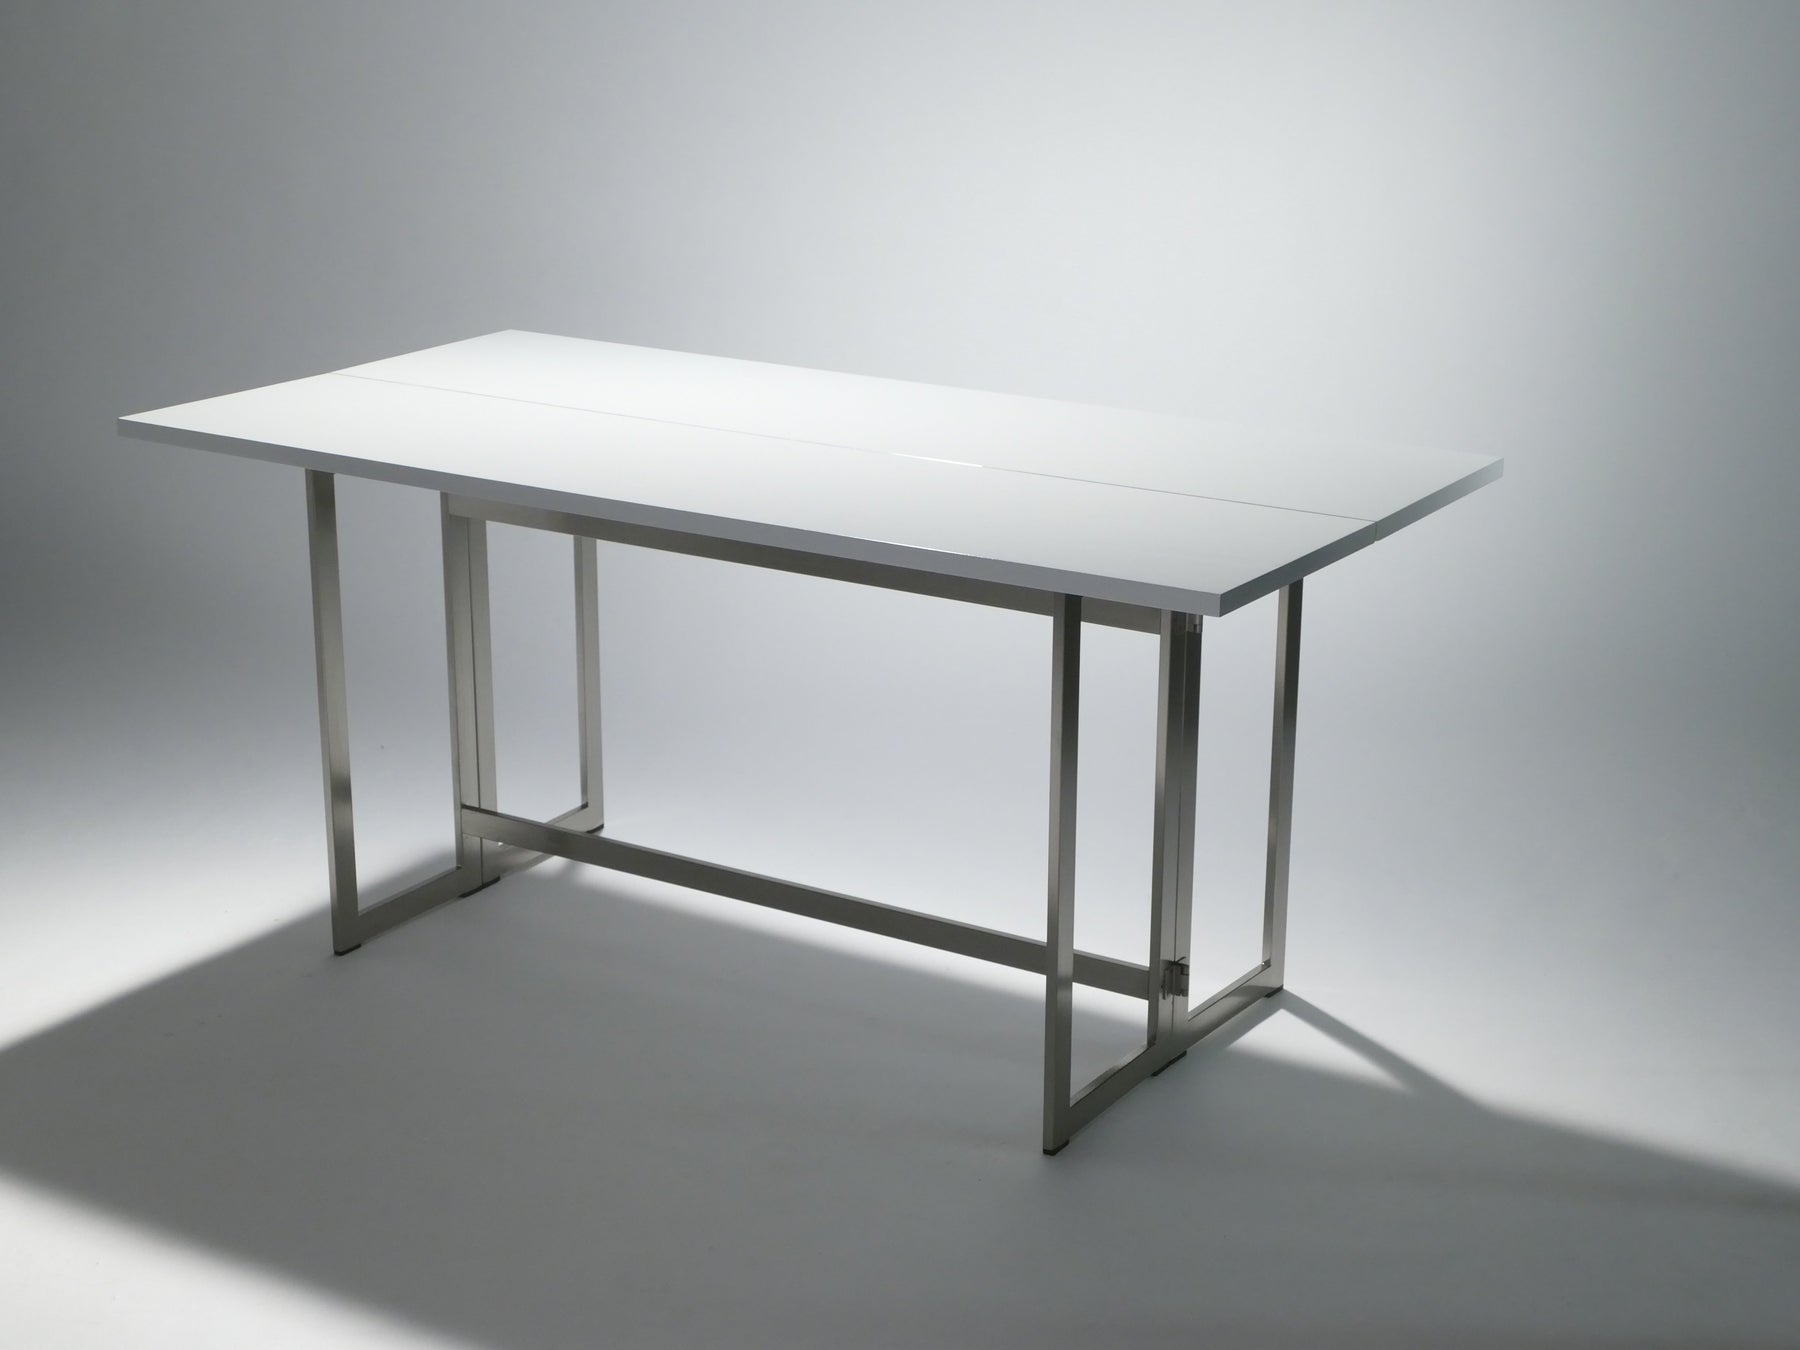 Artelano italian white lacquer console table